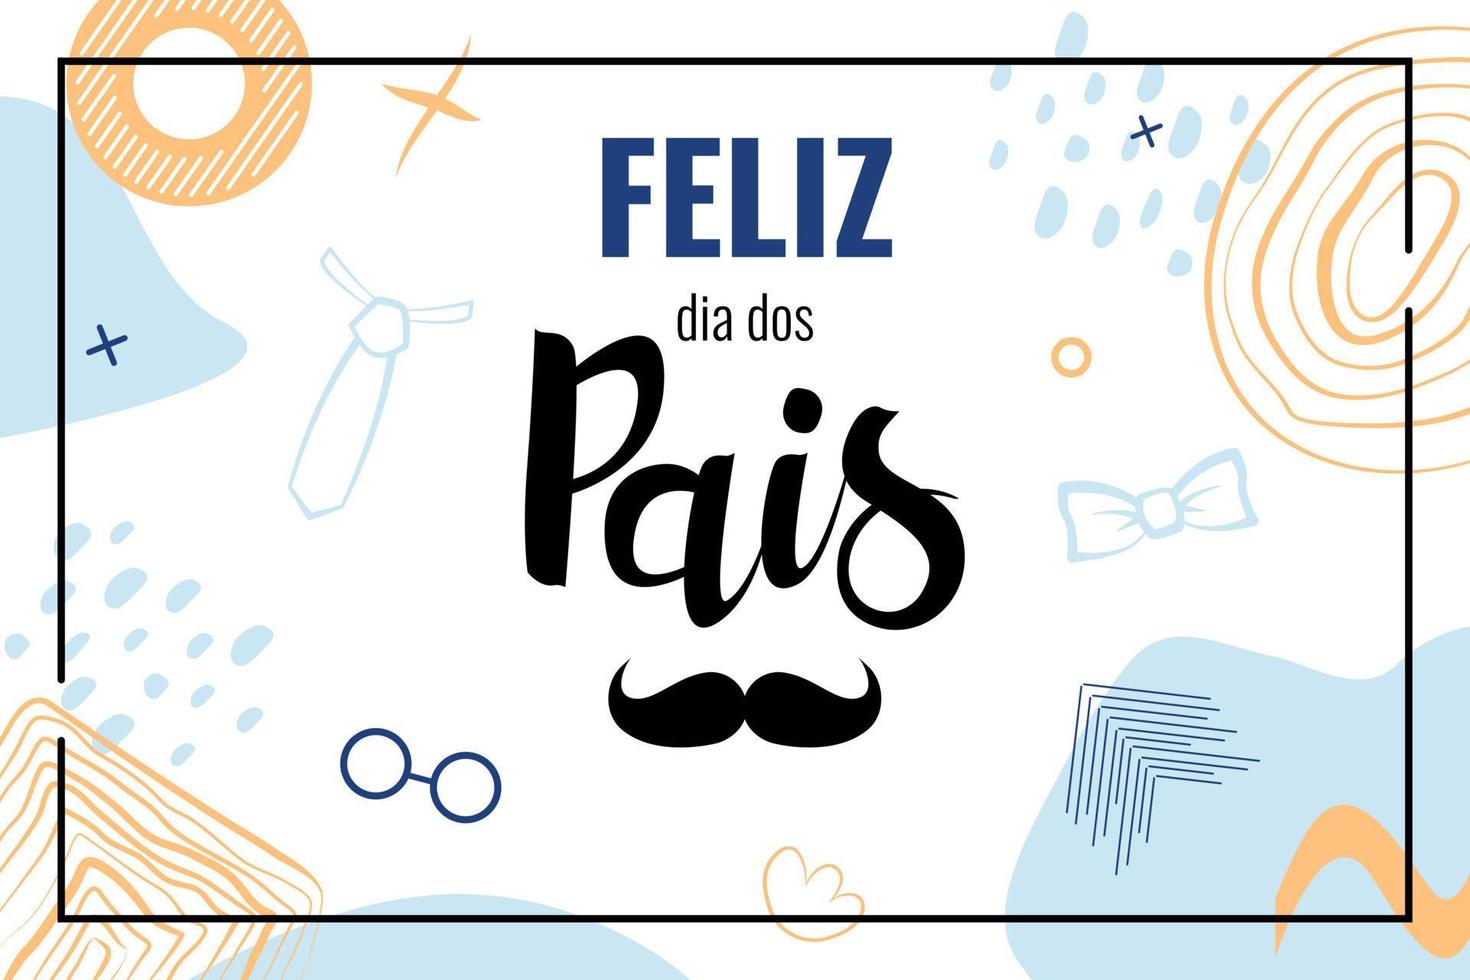 feliz dia dos pais significa feliz dia del padre en brasil. pancarta con  letras en portugués con bigote. vector 8520762 Vector en Vecteezy